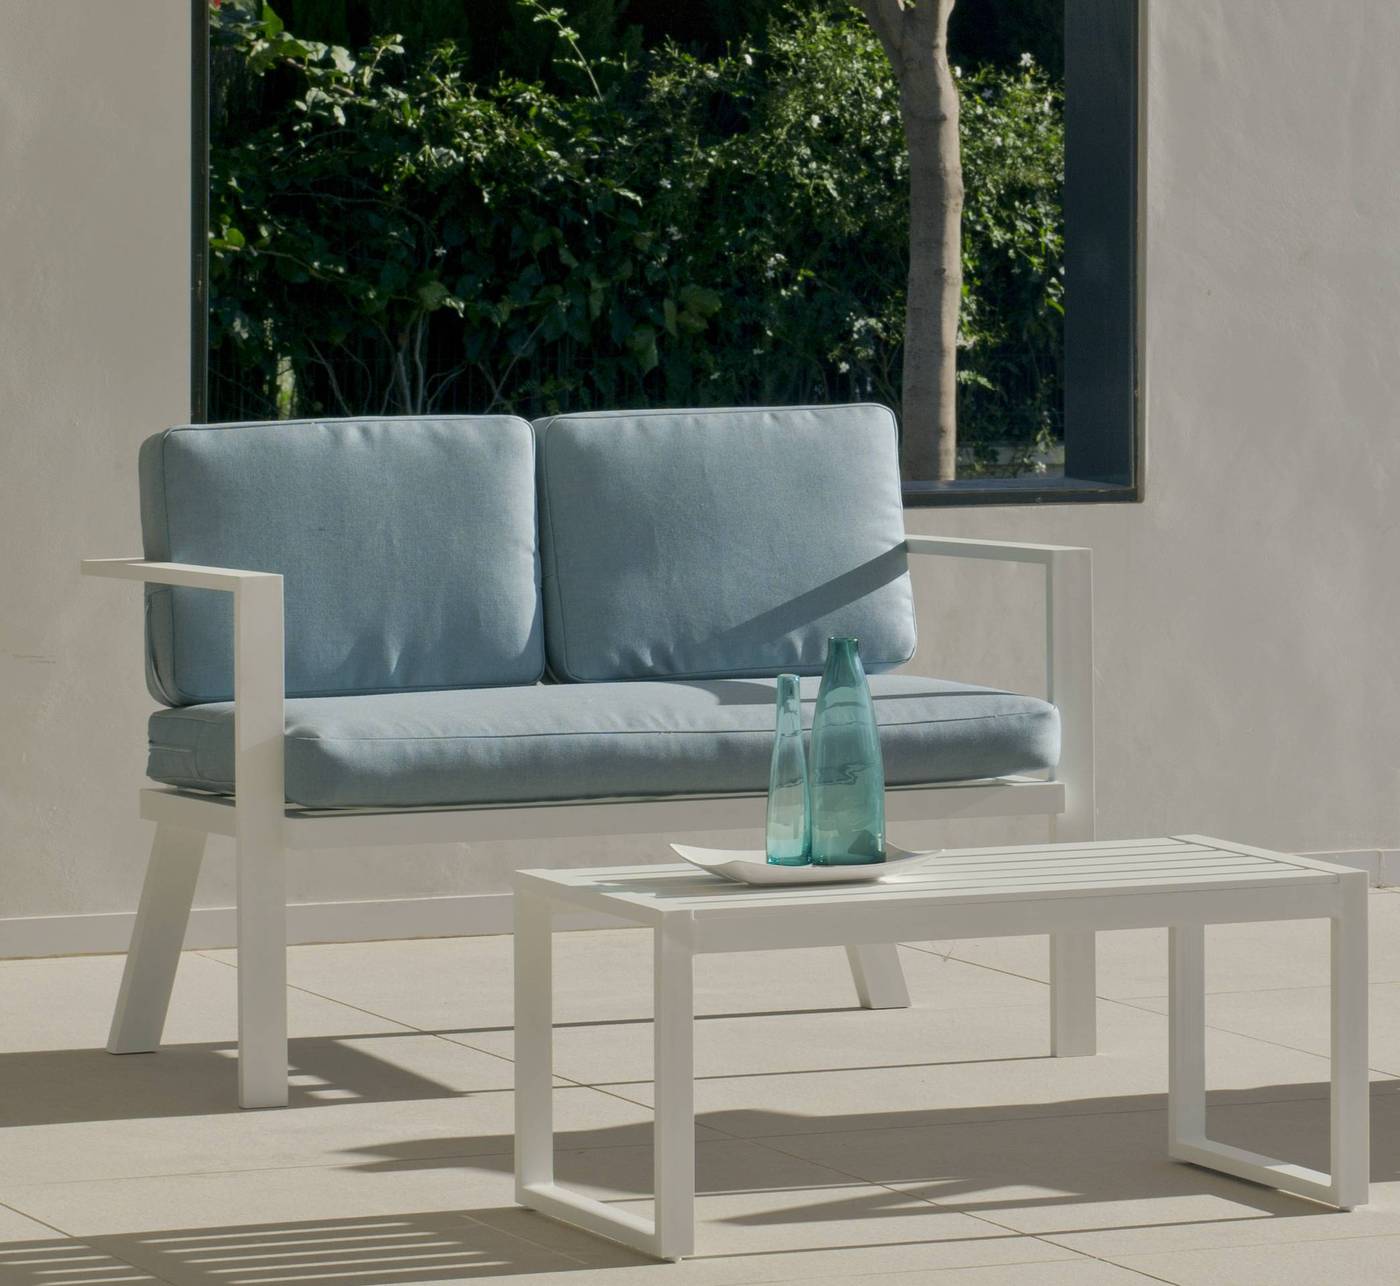 Sofá Luxe 2 plazas con cojines gran confort desenfundables. Estructura aluminio color blanco y antracita.